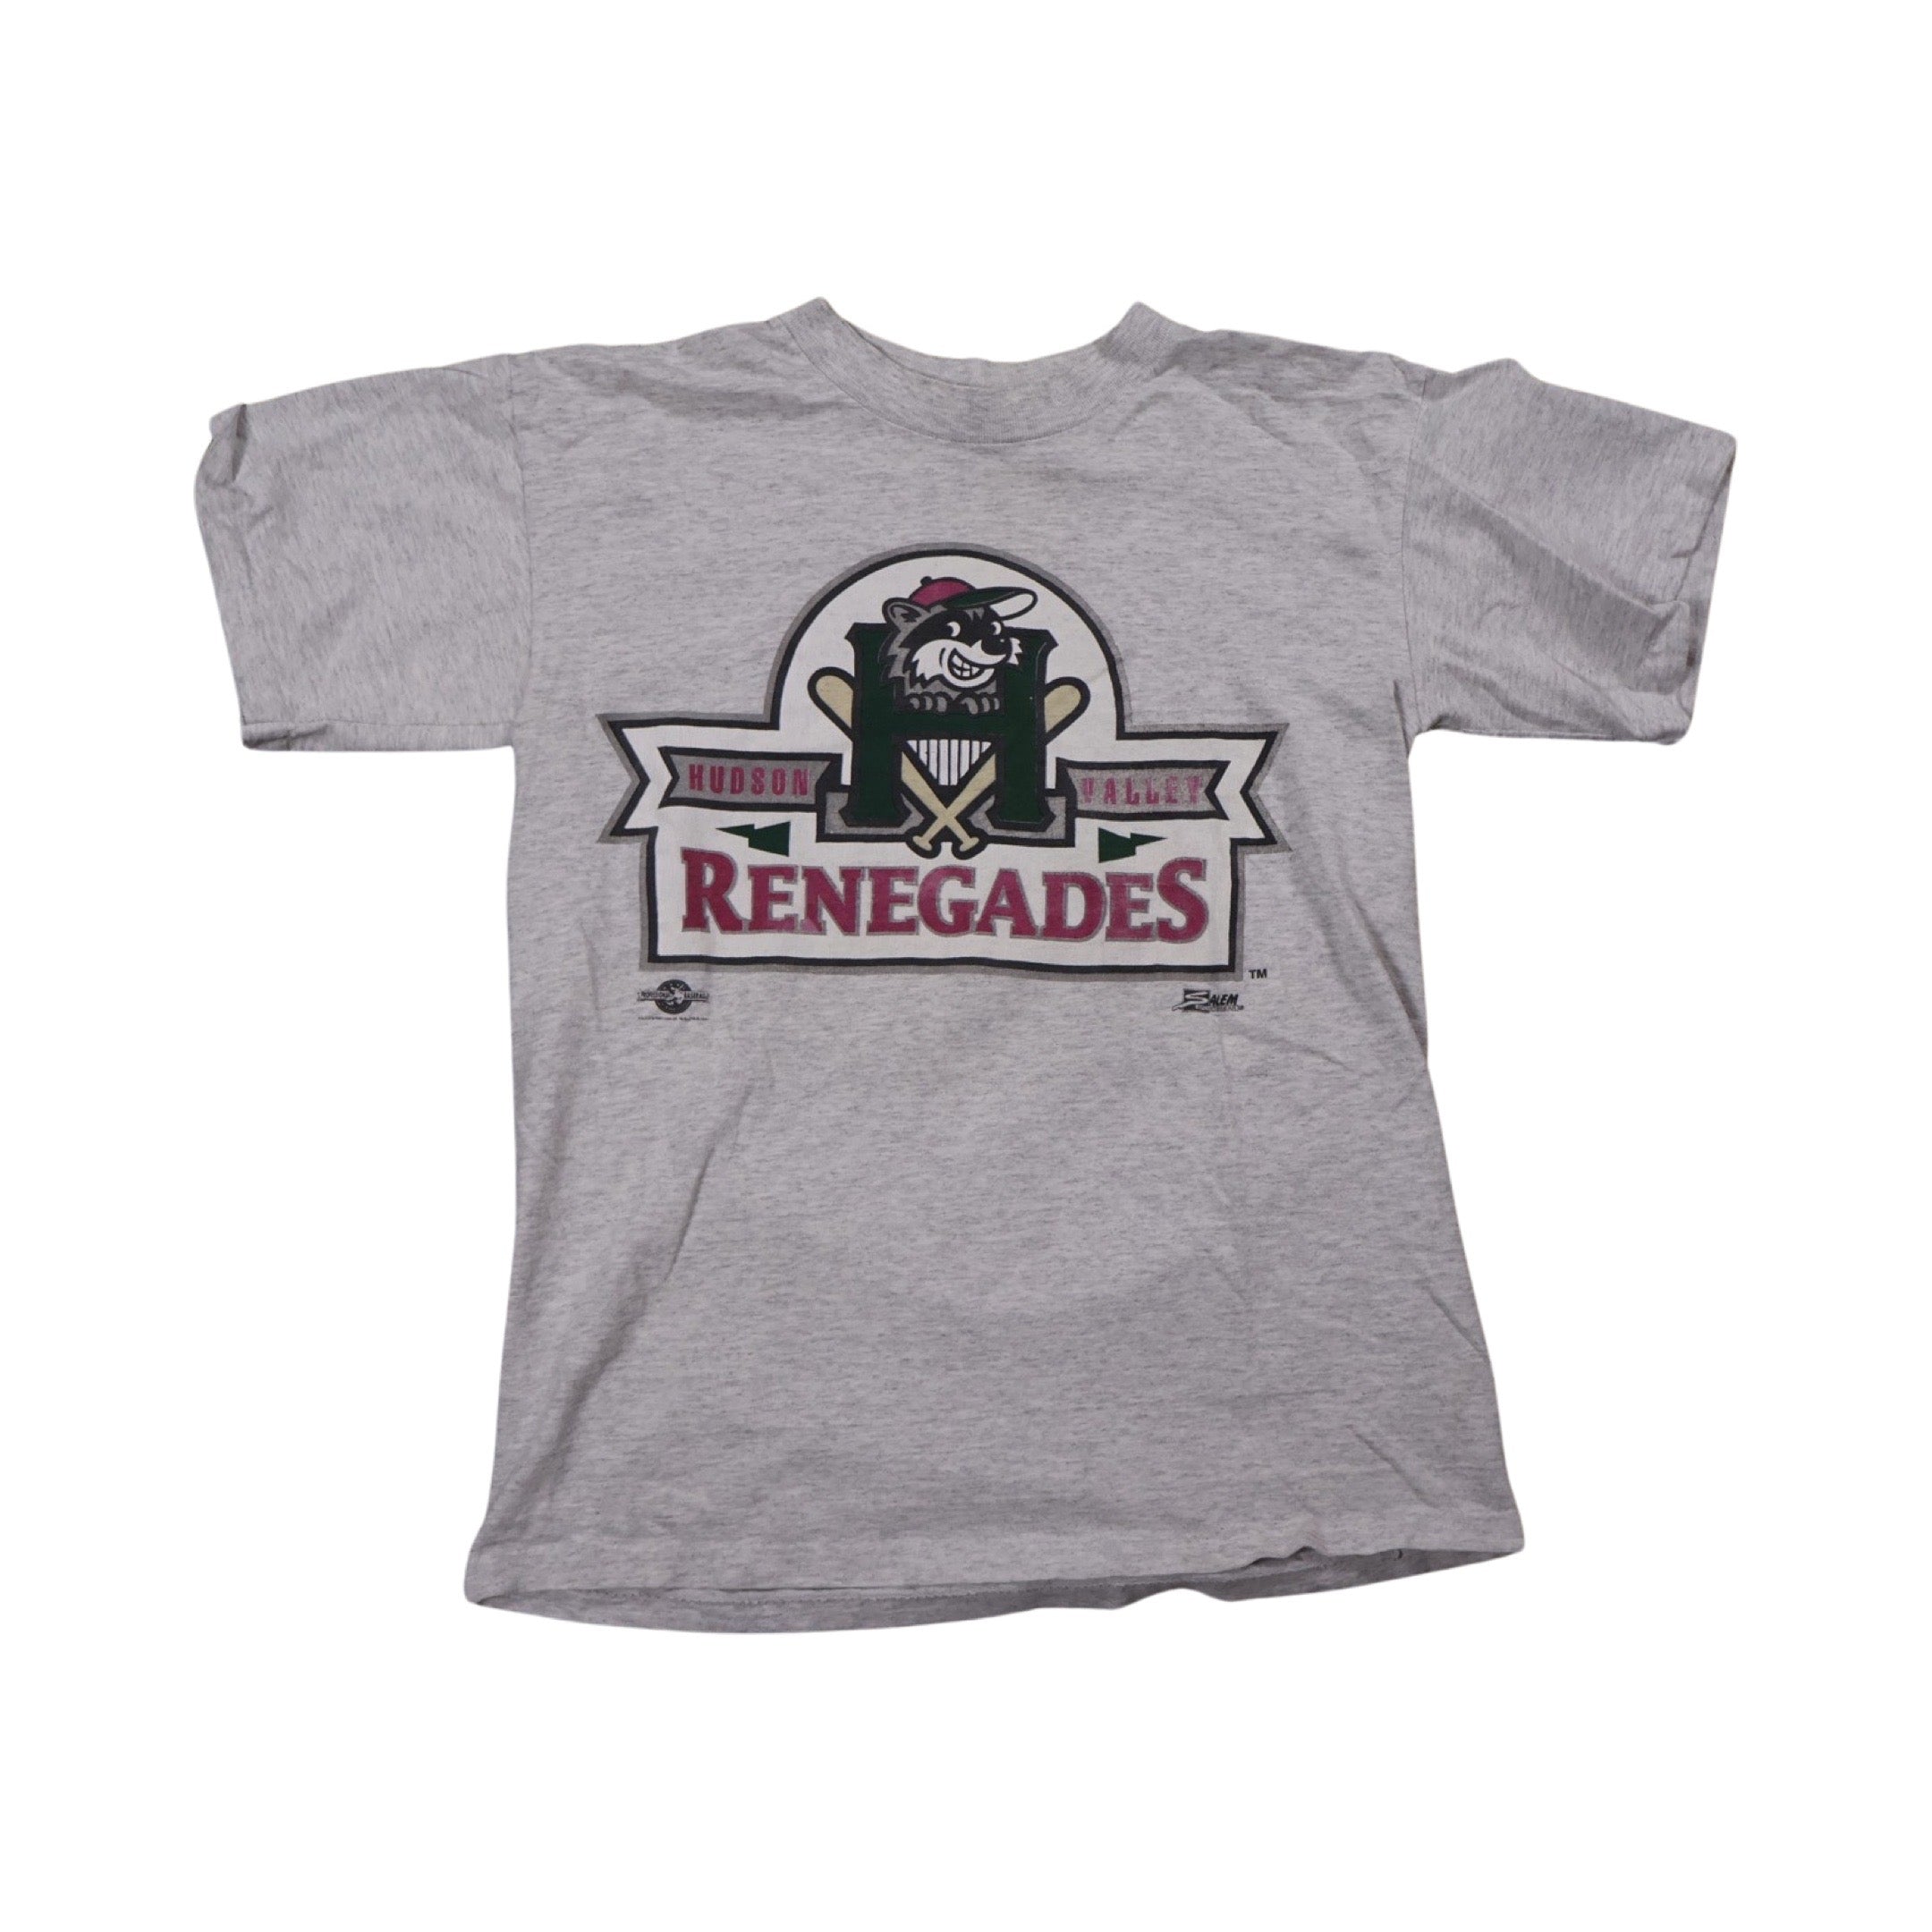 Hudson Valley Renegades 1993 Baseball T-Shirt (Small)